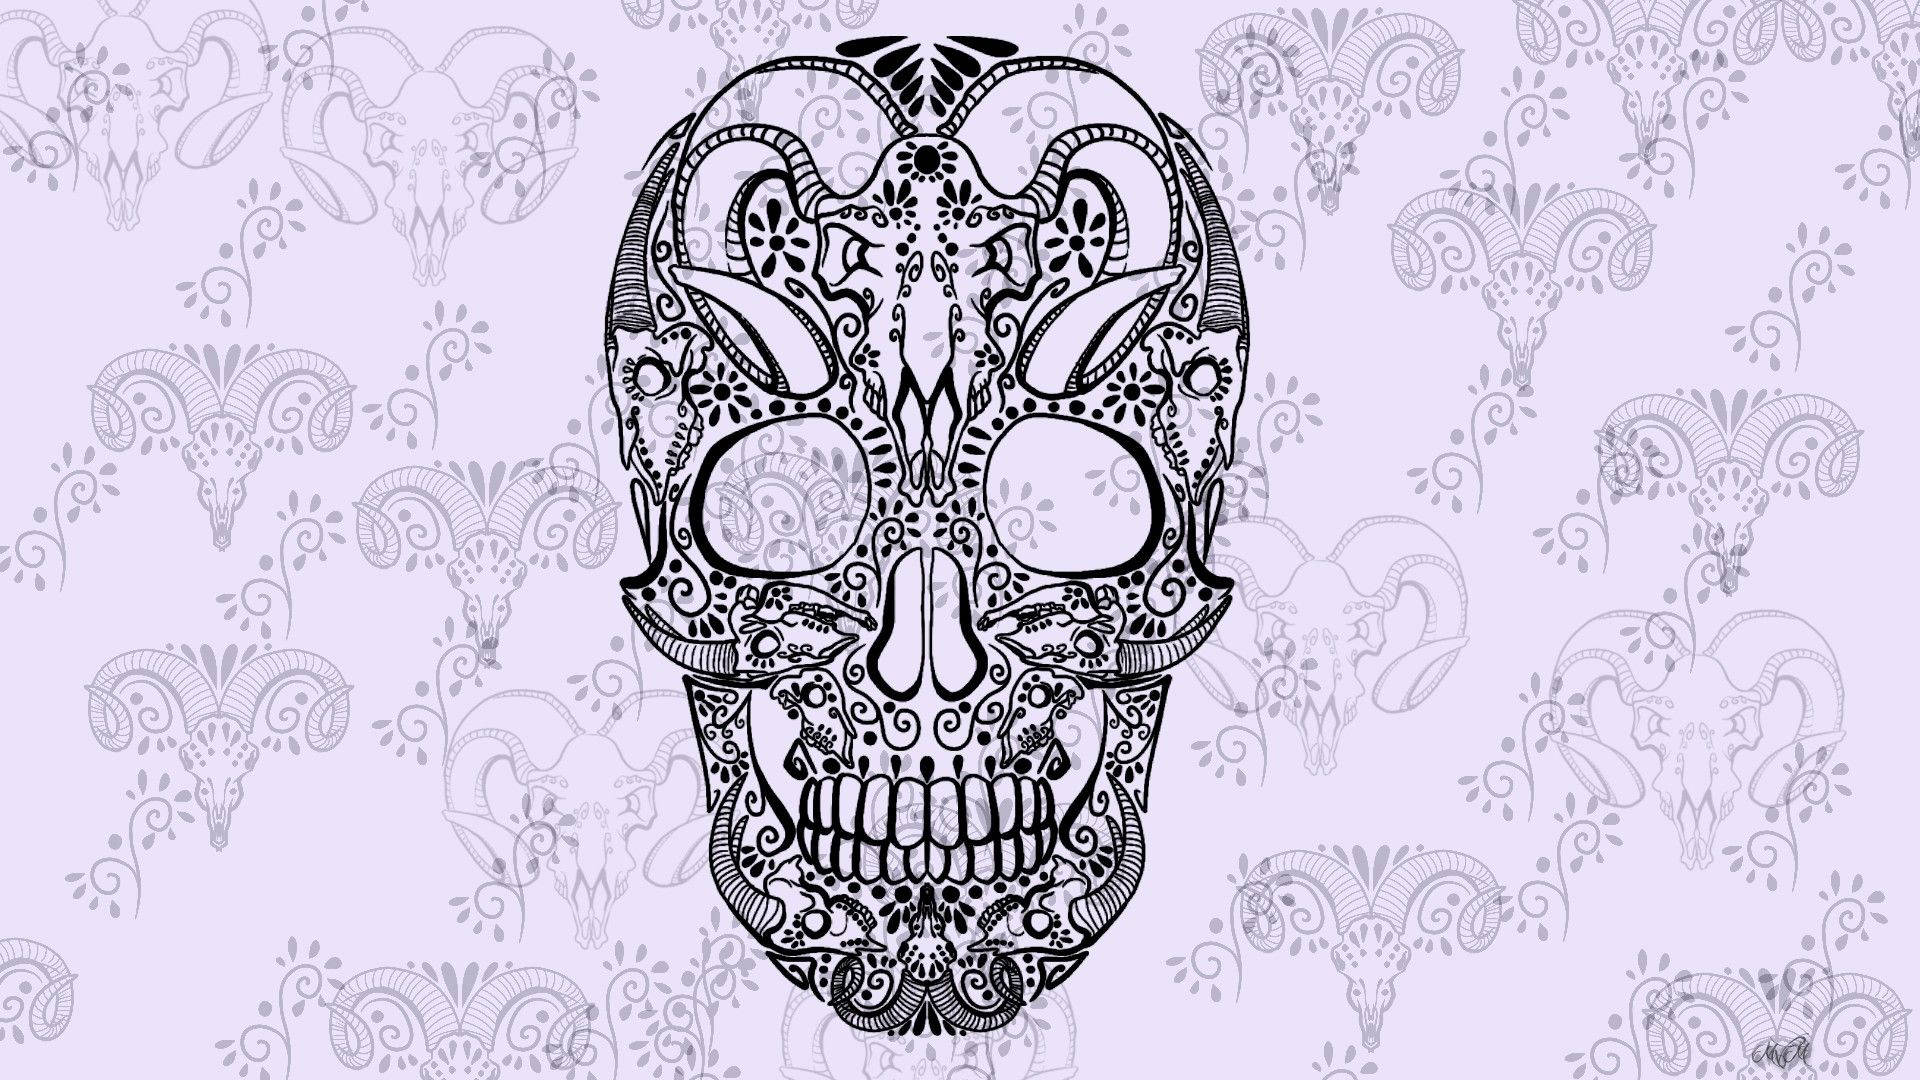 Vintage-Inspired Sugar Skull Artwork Wallpaper